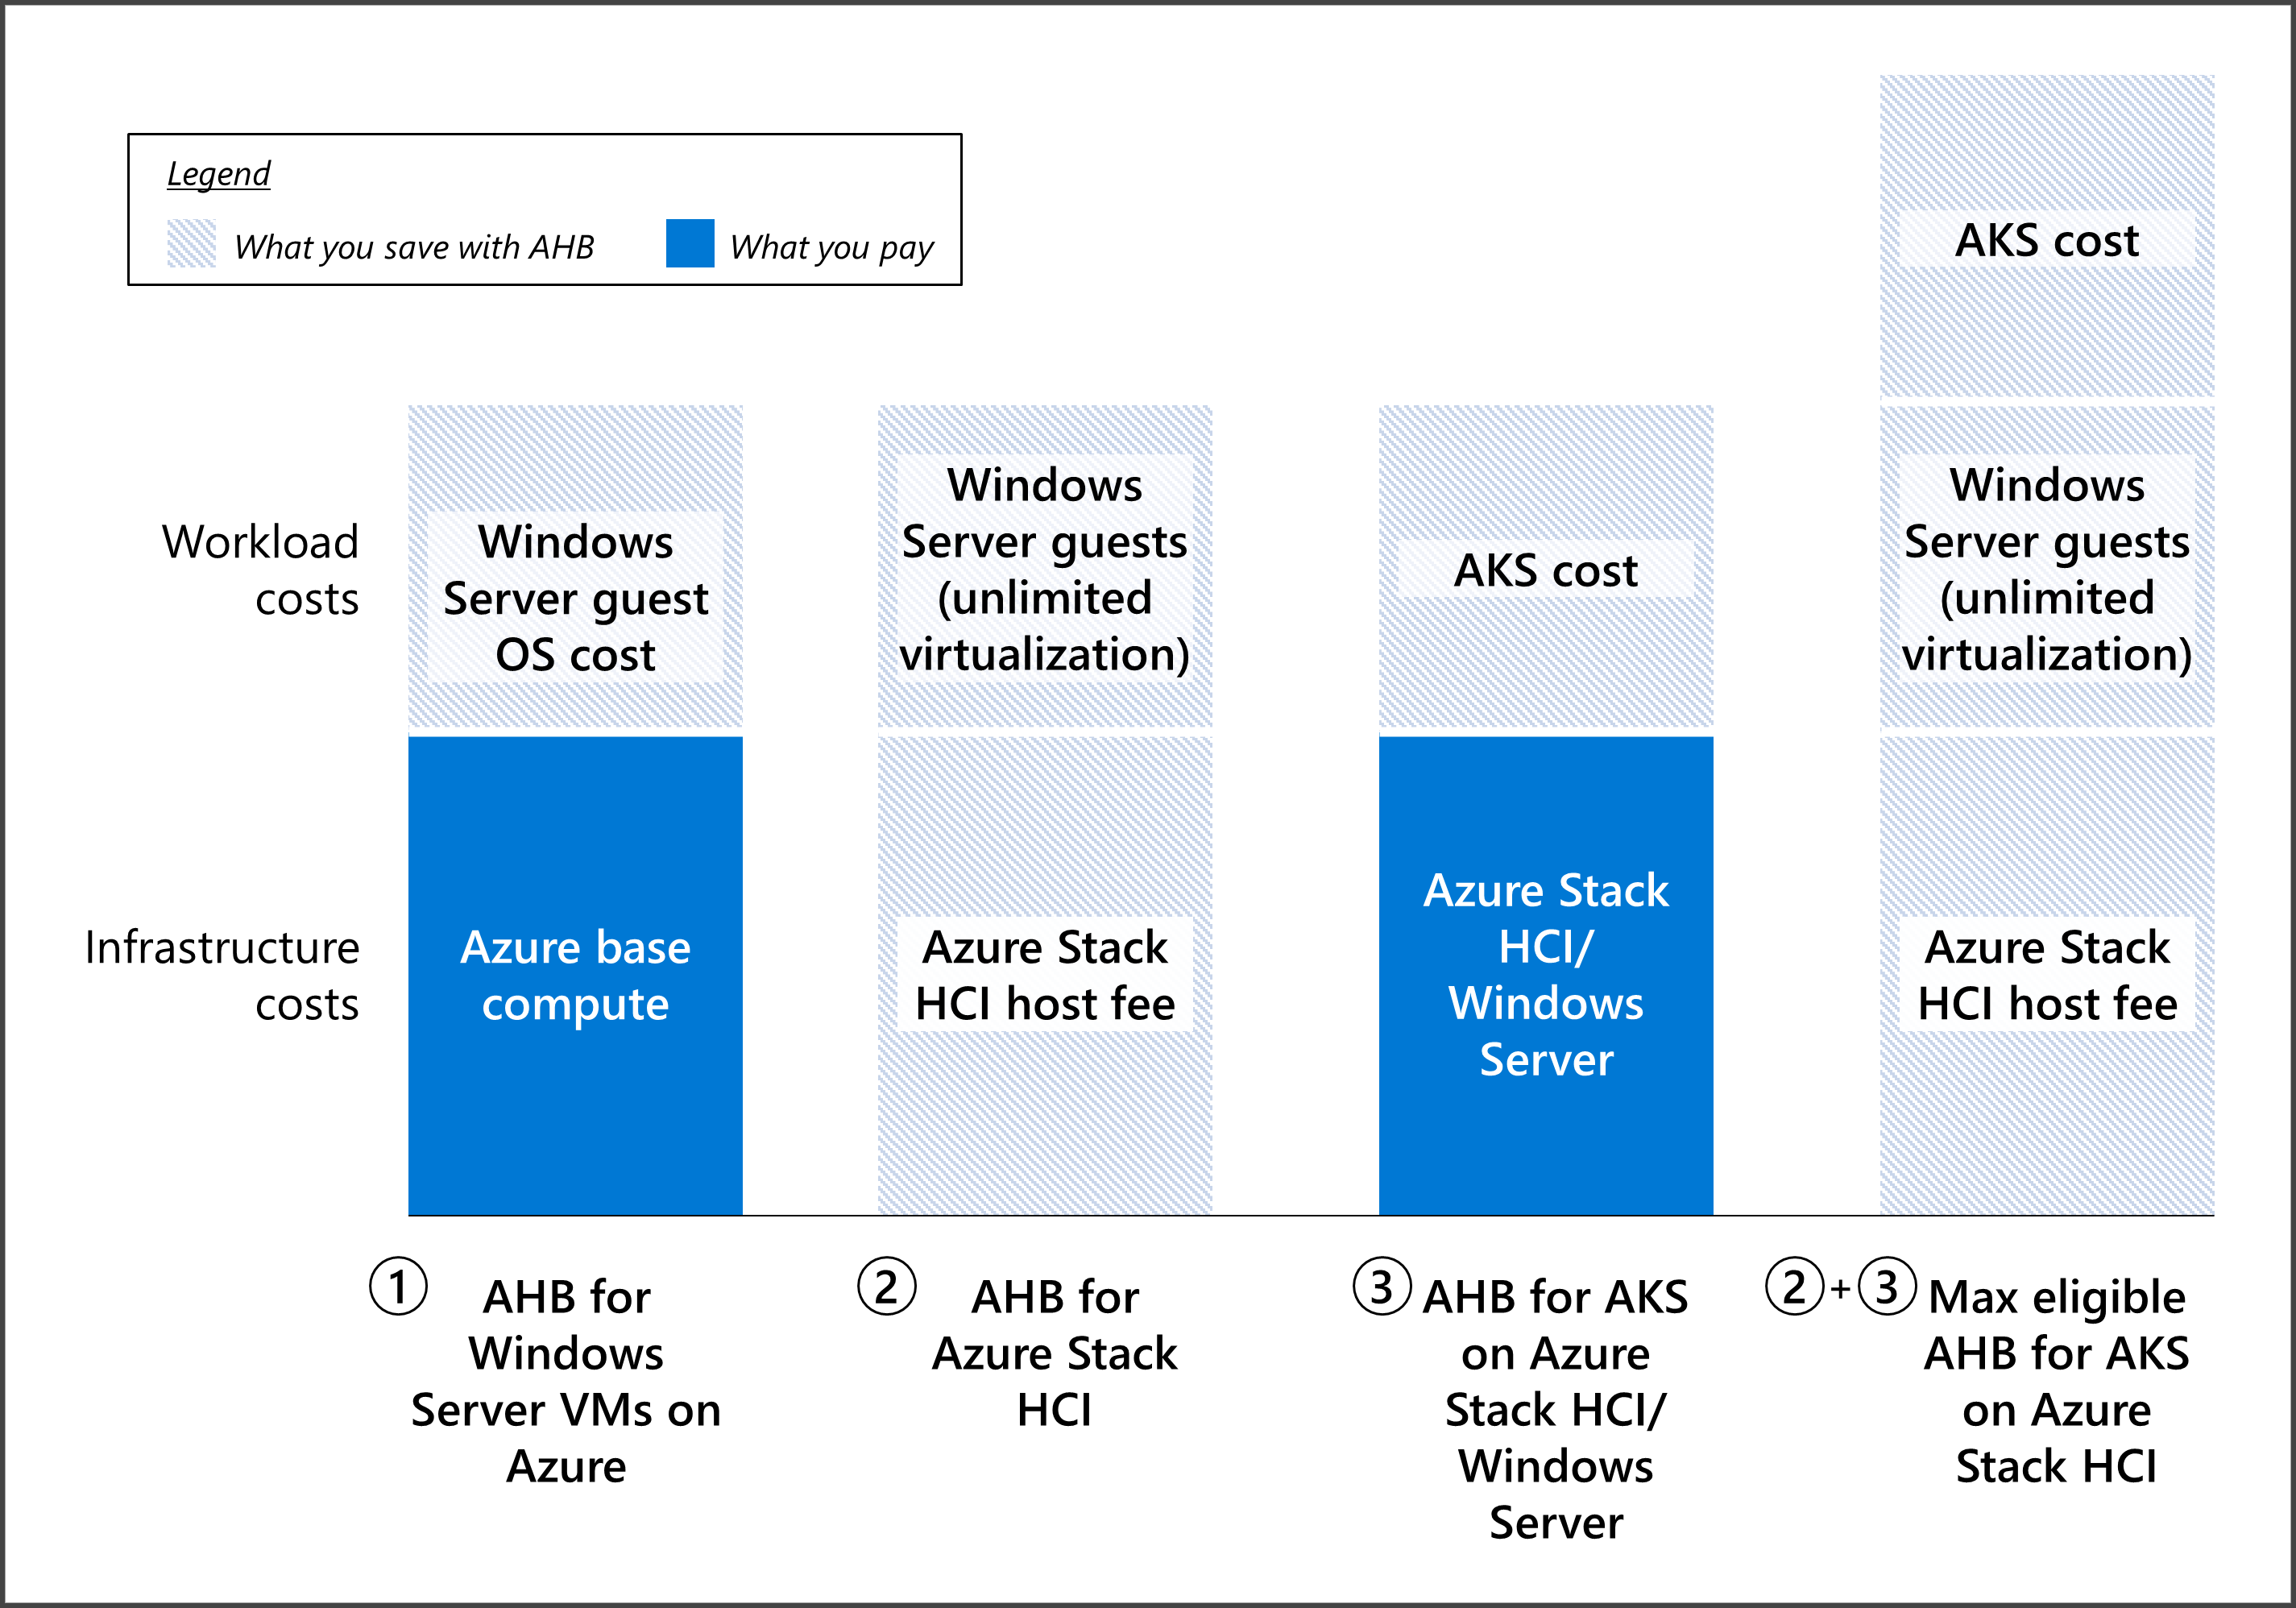 Ilustração mostrando a economia oferecida pelo Benefício Híbrido do Azure para VMs do Windows Server no Azure, o AKS no Azure Stack HCI e o Windows Server.